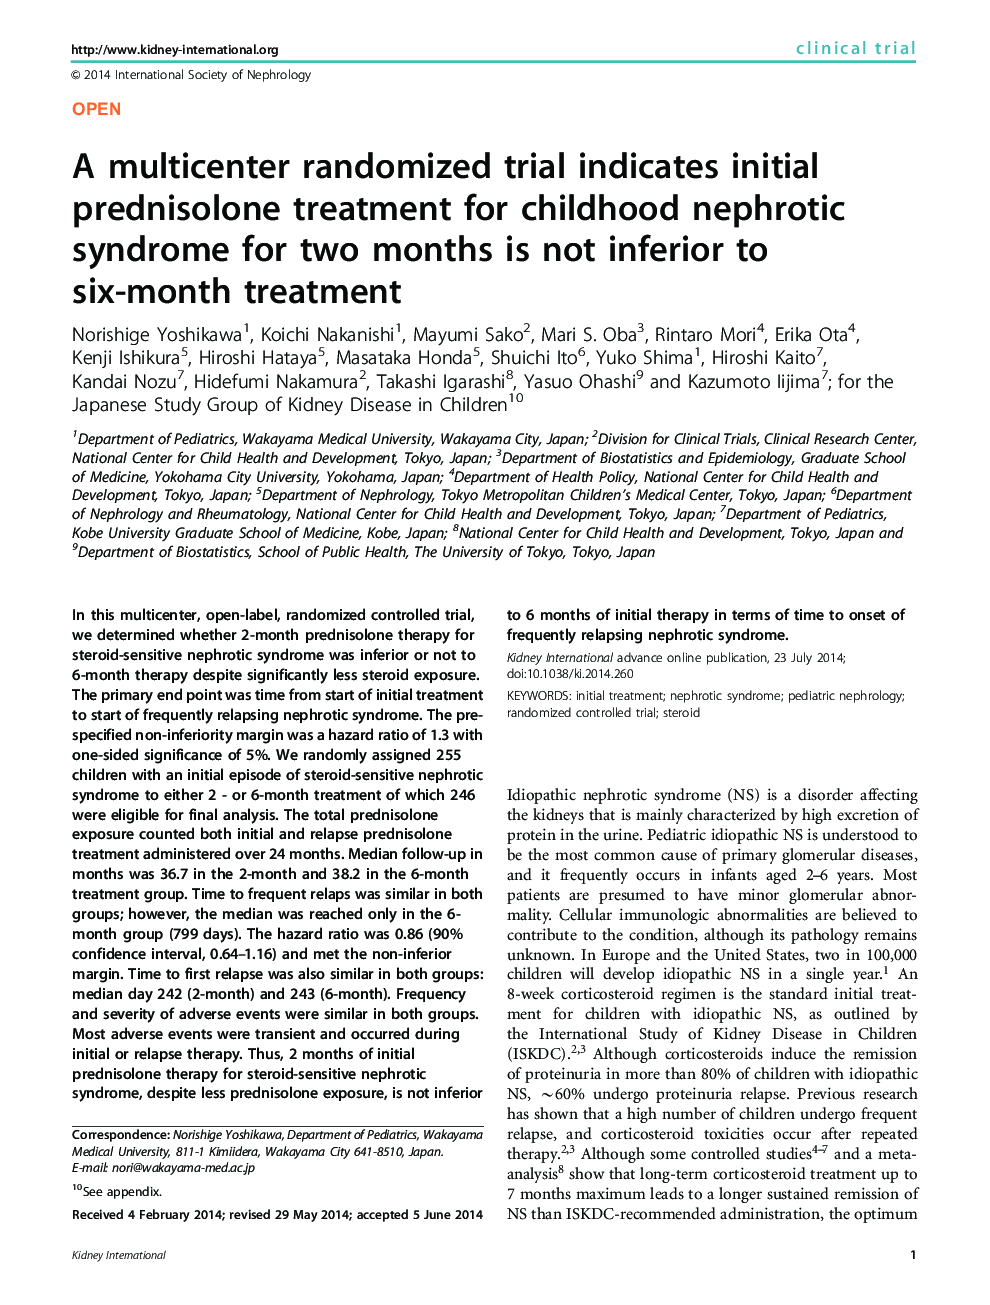 یک آزمایش تصادفی چندتایی نشان می دهد که درمان اولیه پردنیزولون برای سندرم نفروتیک دوران کودکی در دو ماه به میزان کمتر از درمان شش ماهه نیست 